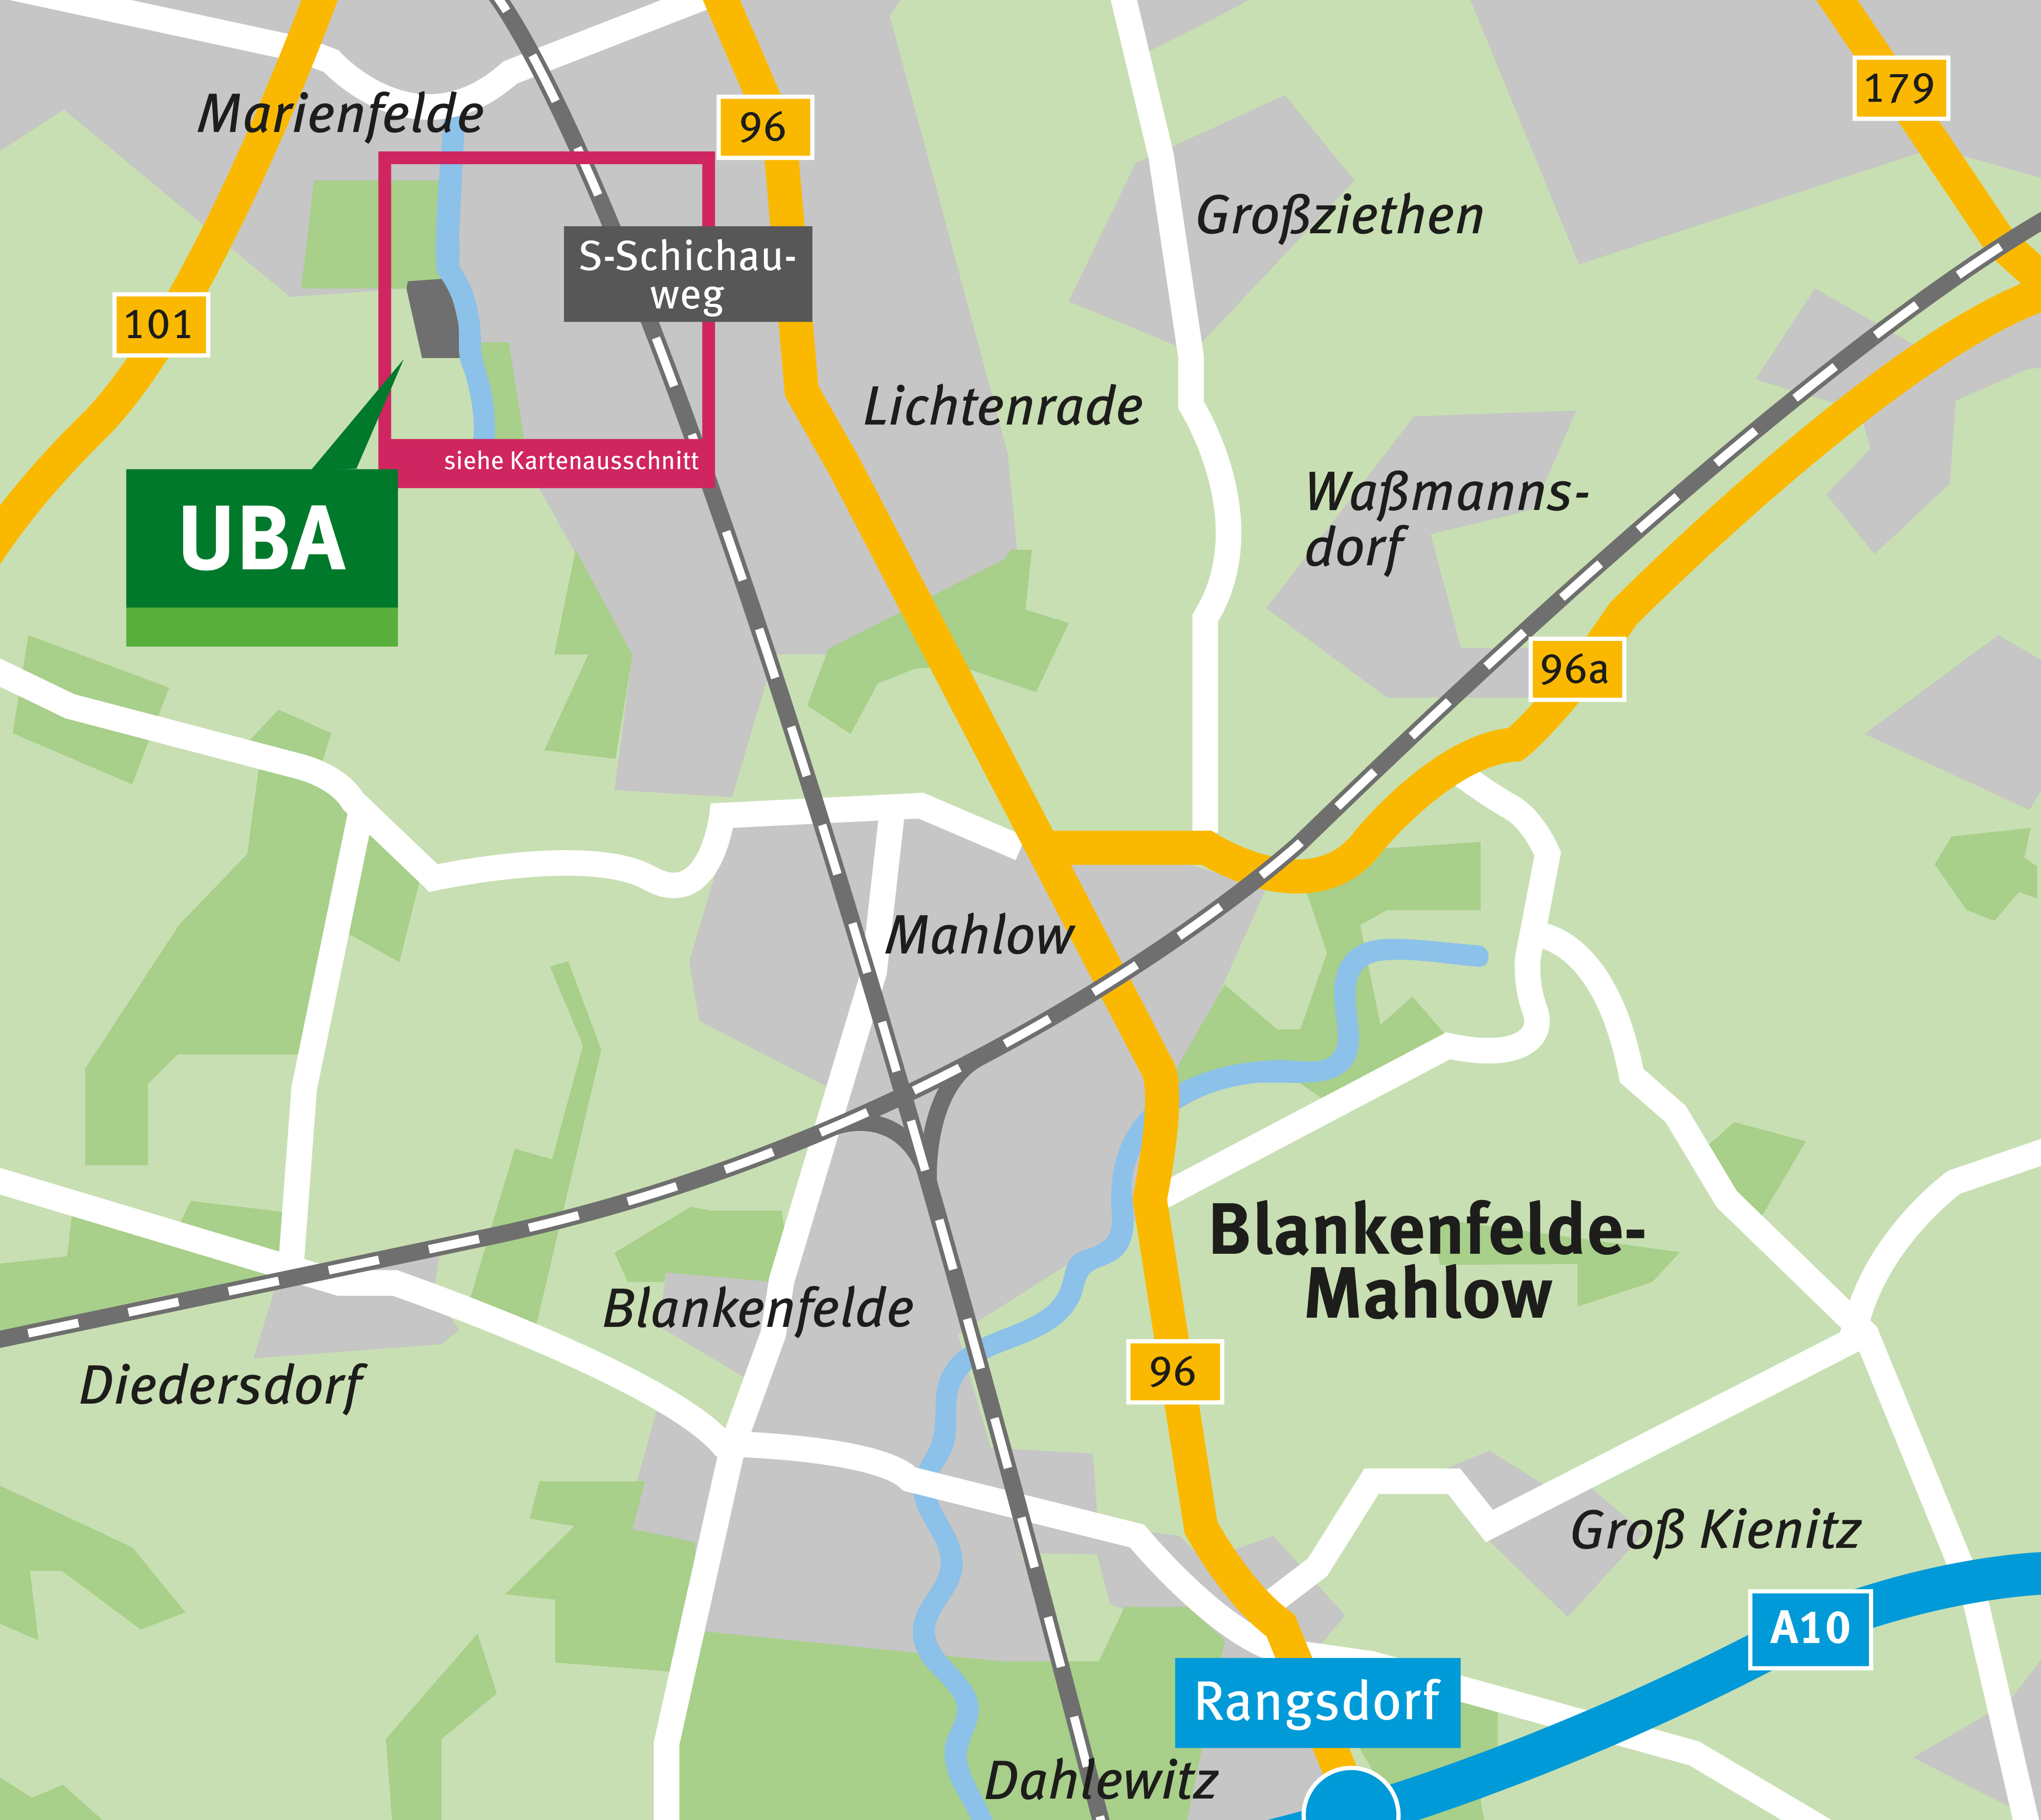 Der Kartenausschnitt zeigt die Lage des Standortes Berlin-Marienfelde.